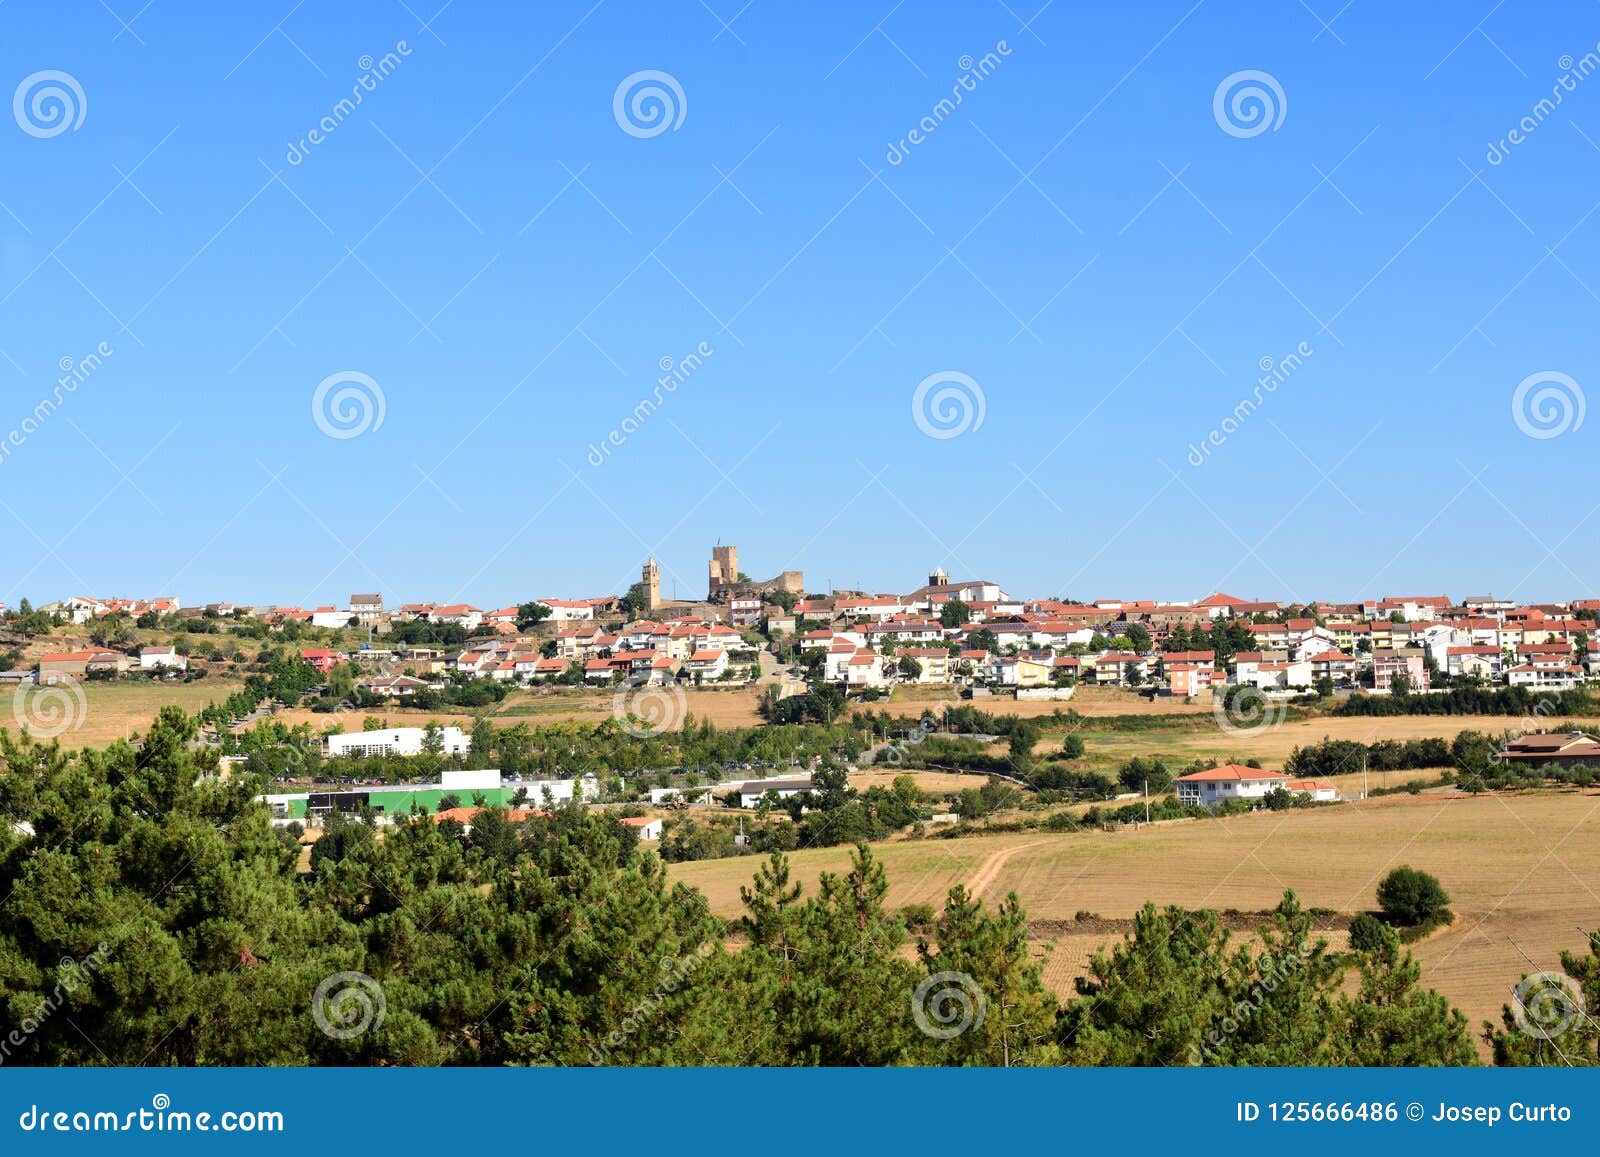 the town of mogadouro, tras-os-montes, portugal